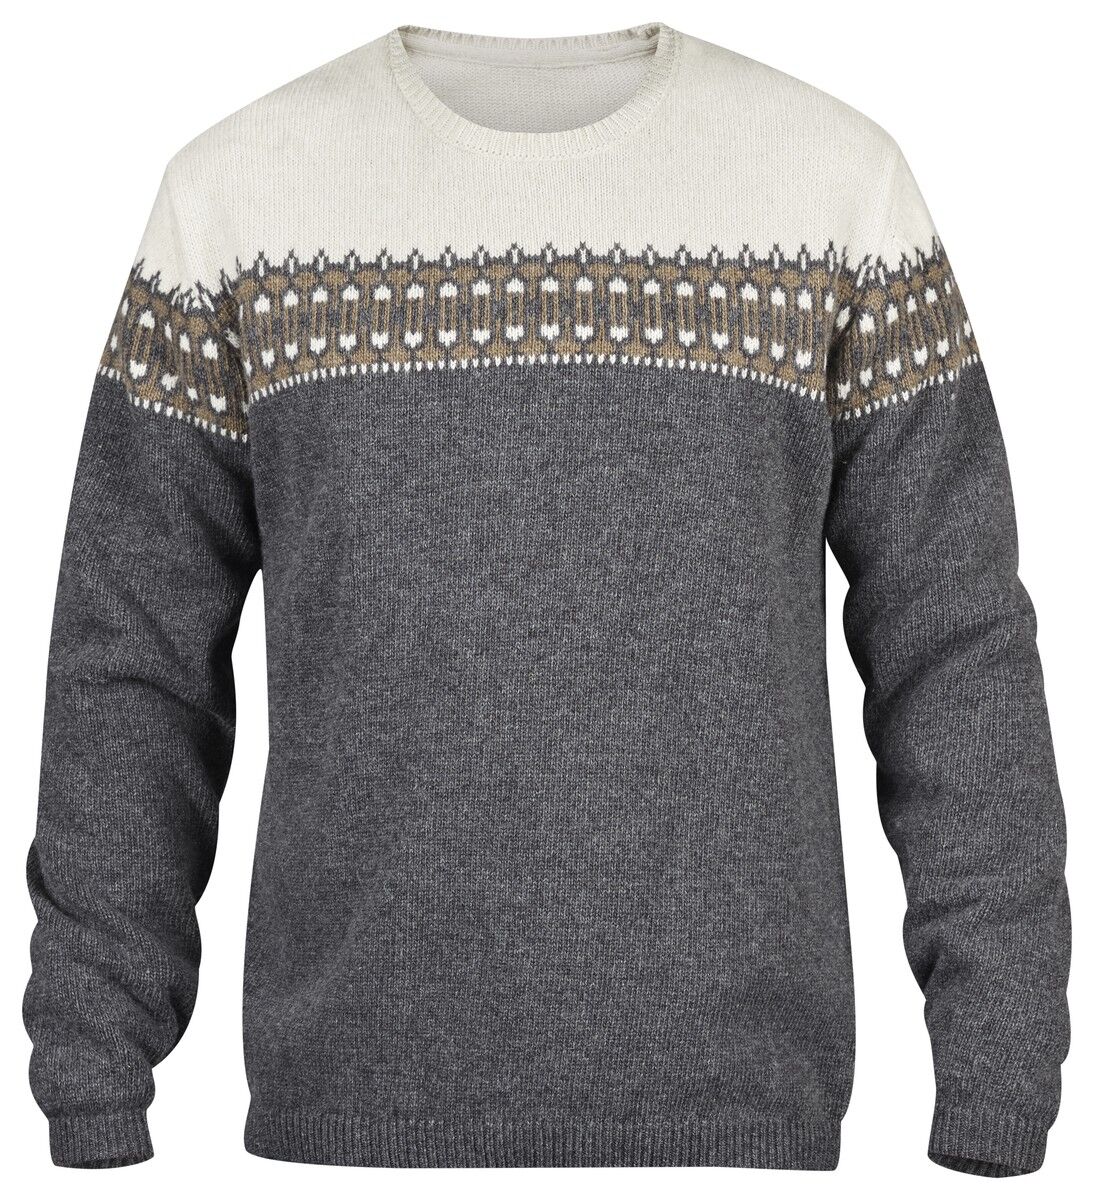 Fjällräven - Pull Övik Scandinavian Sweater - Jumper - Men's